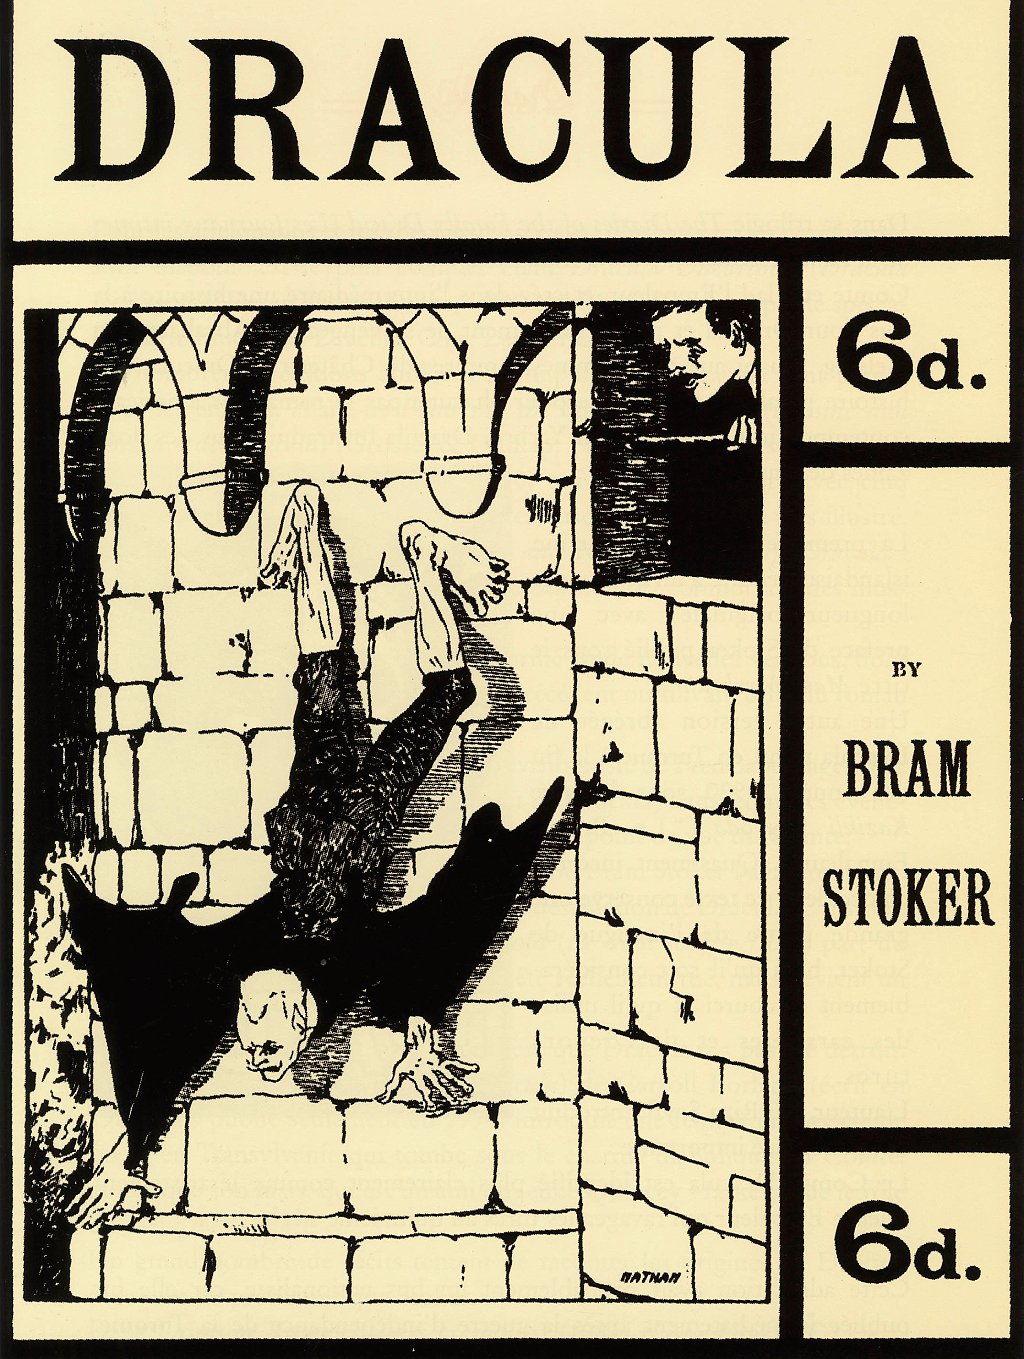 Carátula de una edición de 1901 de la novela de Bram Stoker "Dracula".